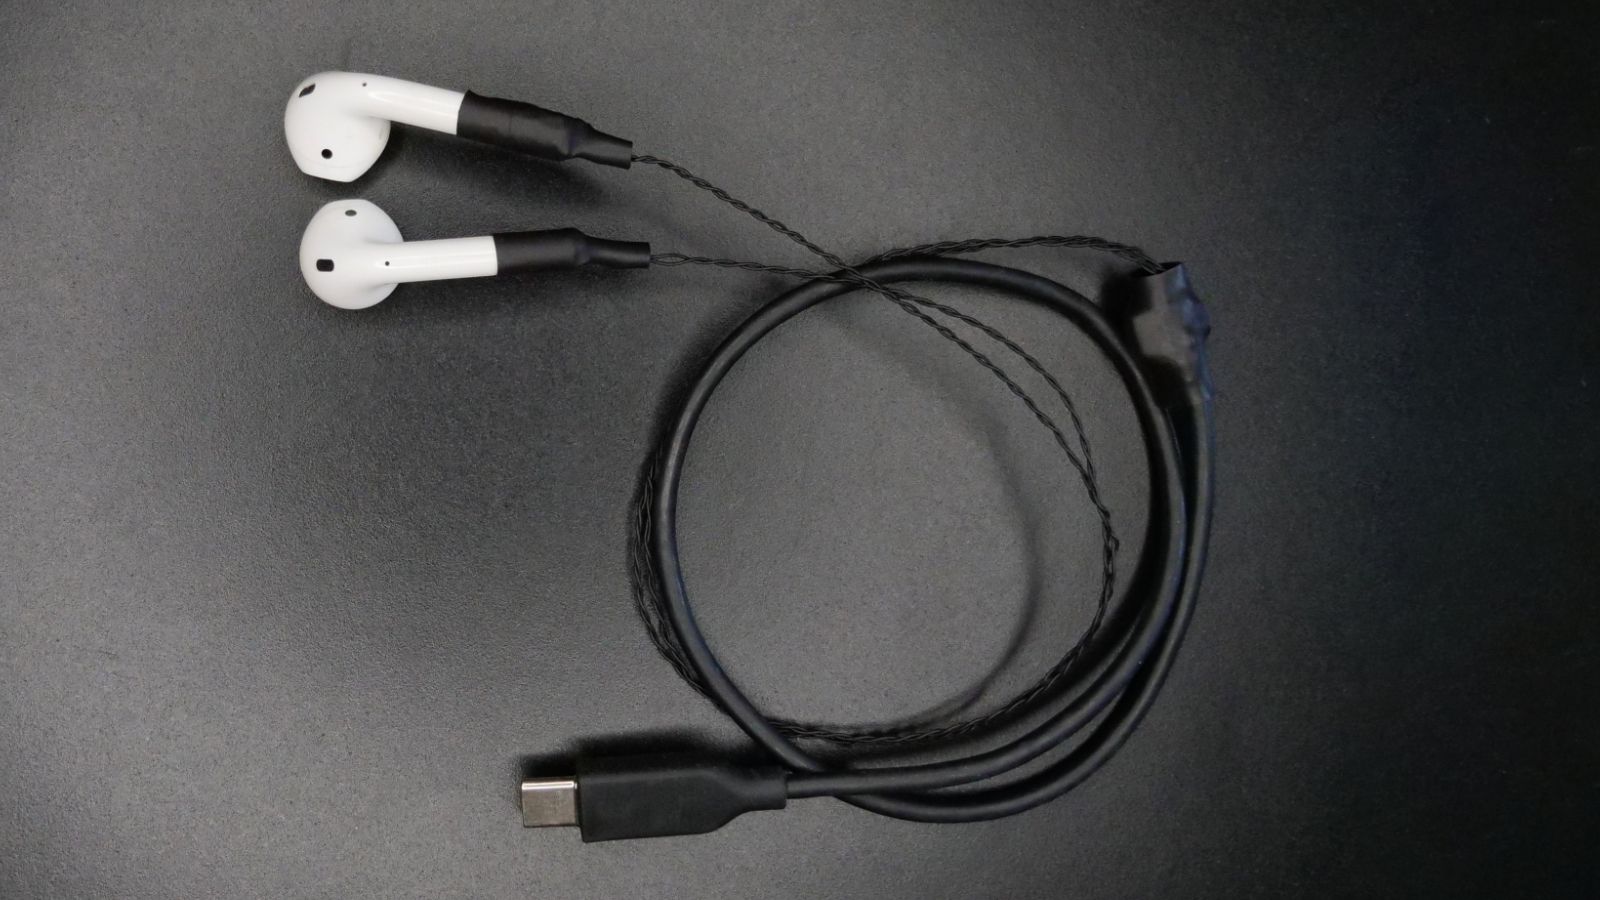 工程師成功為AirPods帶來線纜和USB-C接頭 | Apple News | iPhone News 愛瘋了